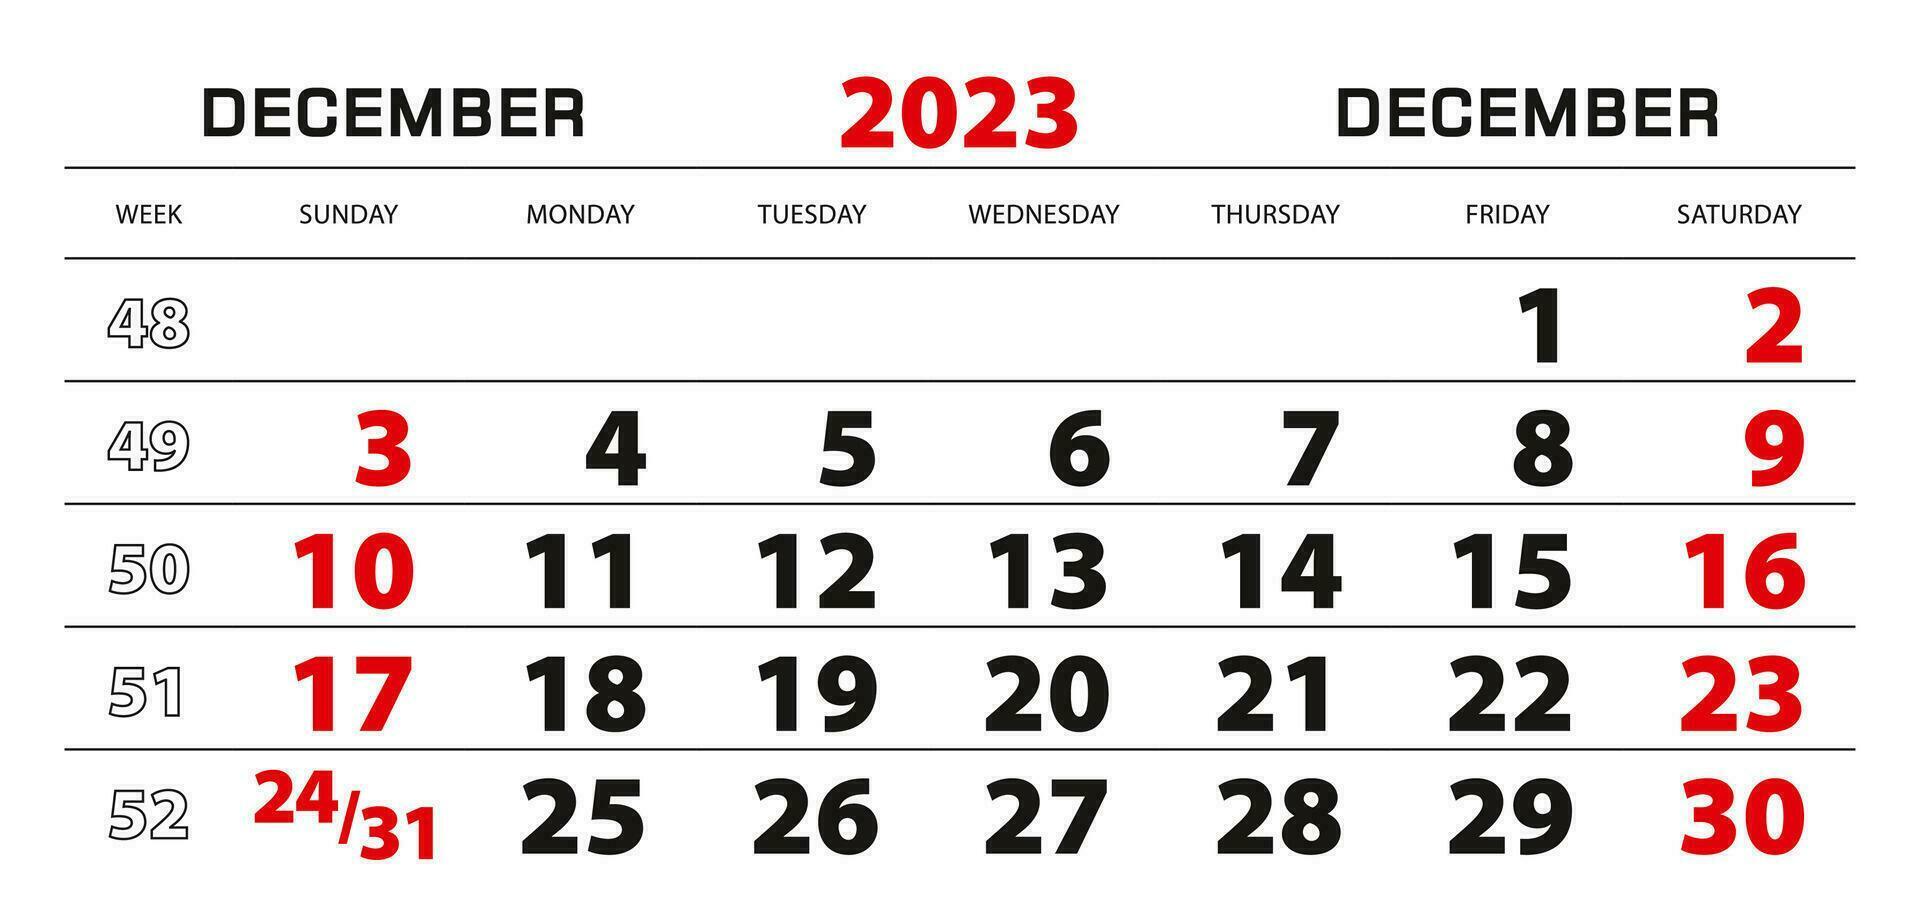 calendrier mural 2023 pour décembre, semaine commençant le dimanche. vecteur